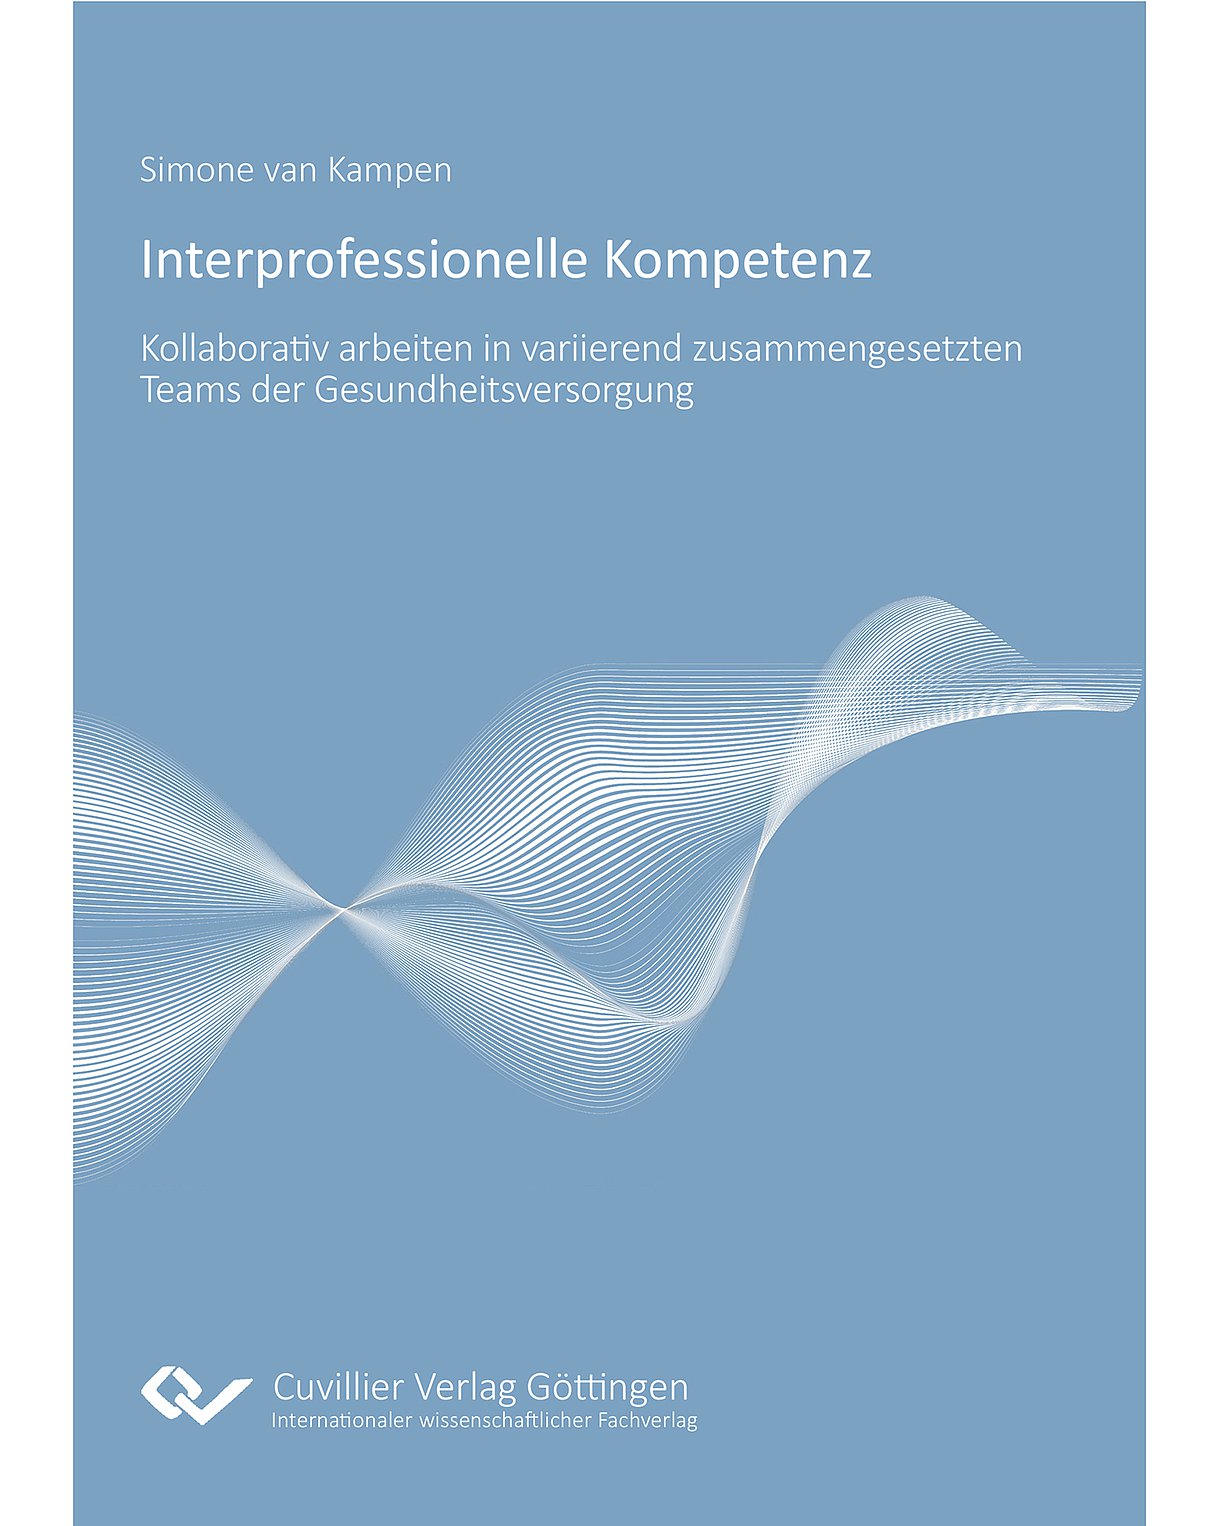 Cover des Buches "Interprofessionelle Kompetenz": Weiße Wellenbewegungen auf hellblauem Grund